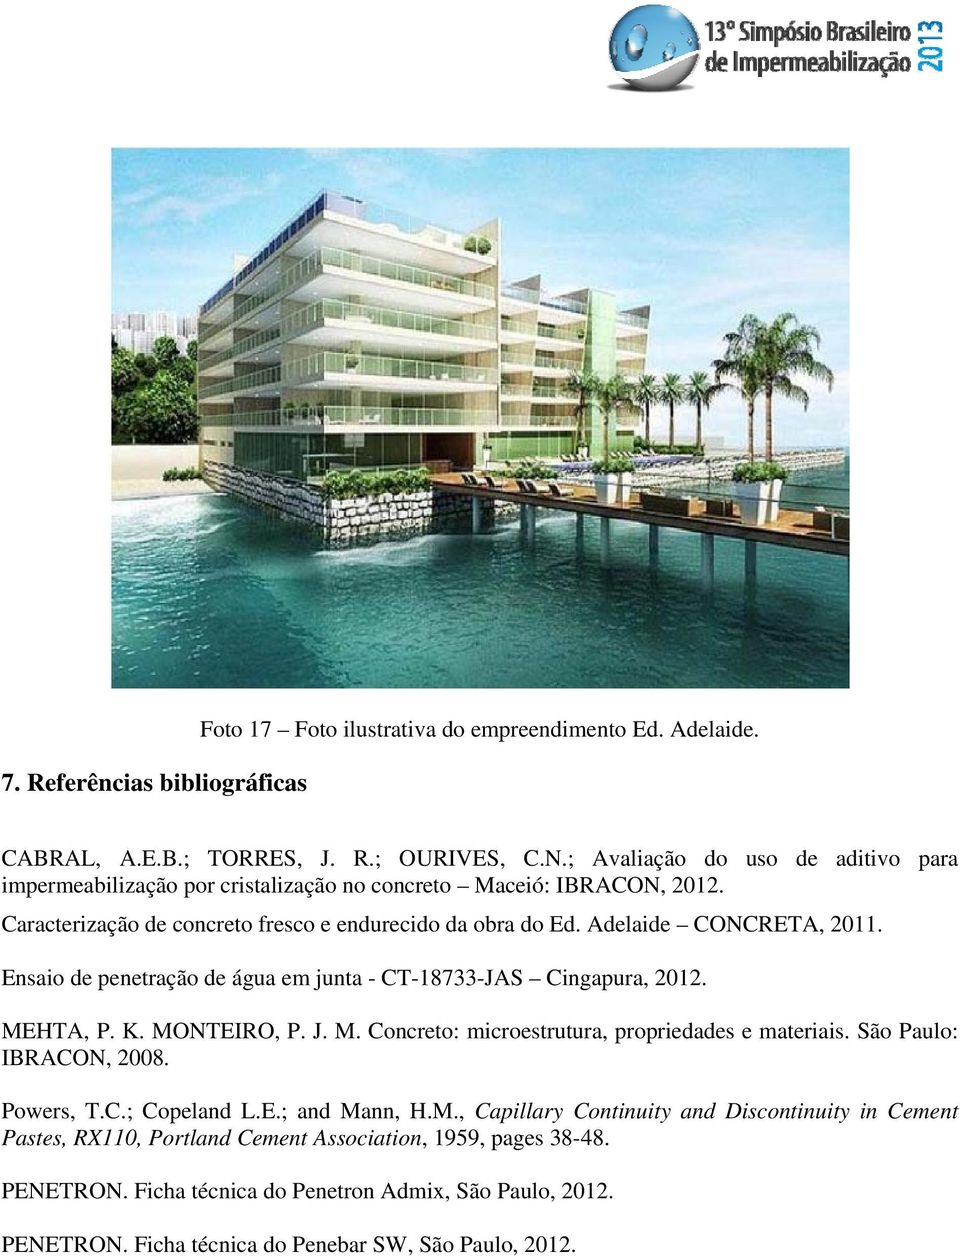 Ensaio de penetração de água em junta - CT-18733-JAS Cingapura, 2012. MEHTA, P. K. MONTEIRO, P. J. M. Concreto: microestrutura, propriedades e materiais. São Paulo: IBRACON, 2008. Powers, T.C.; Copeland L.